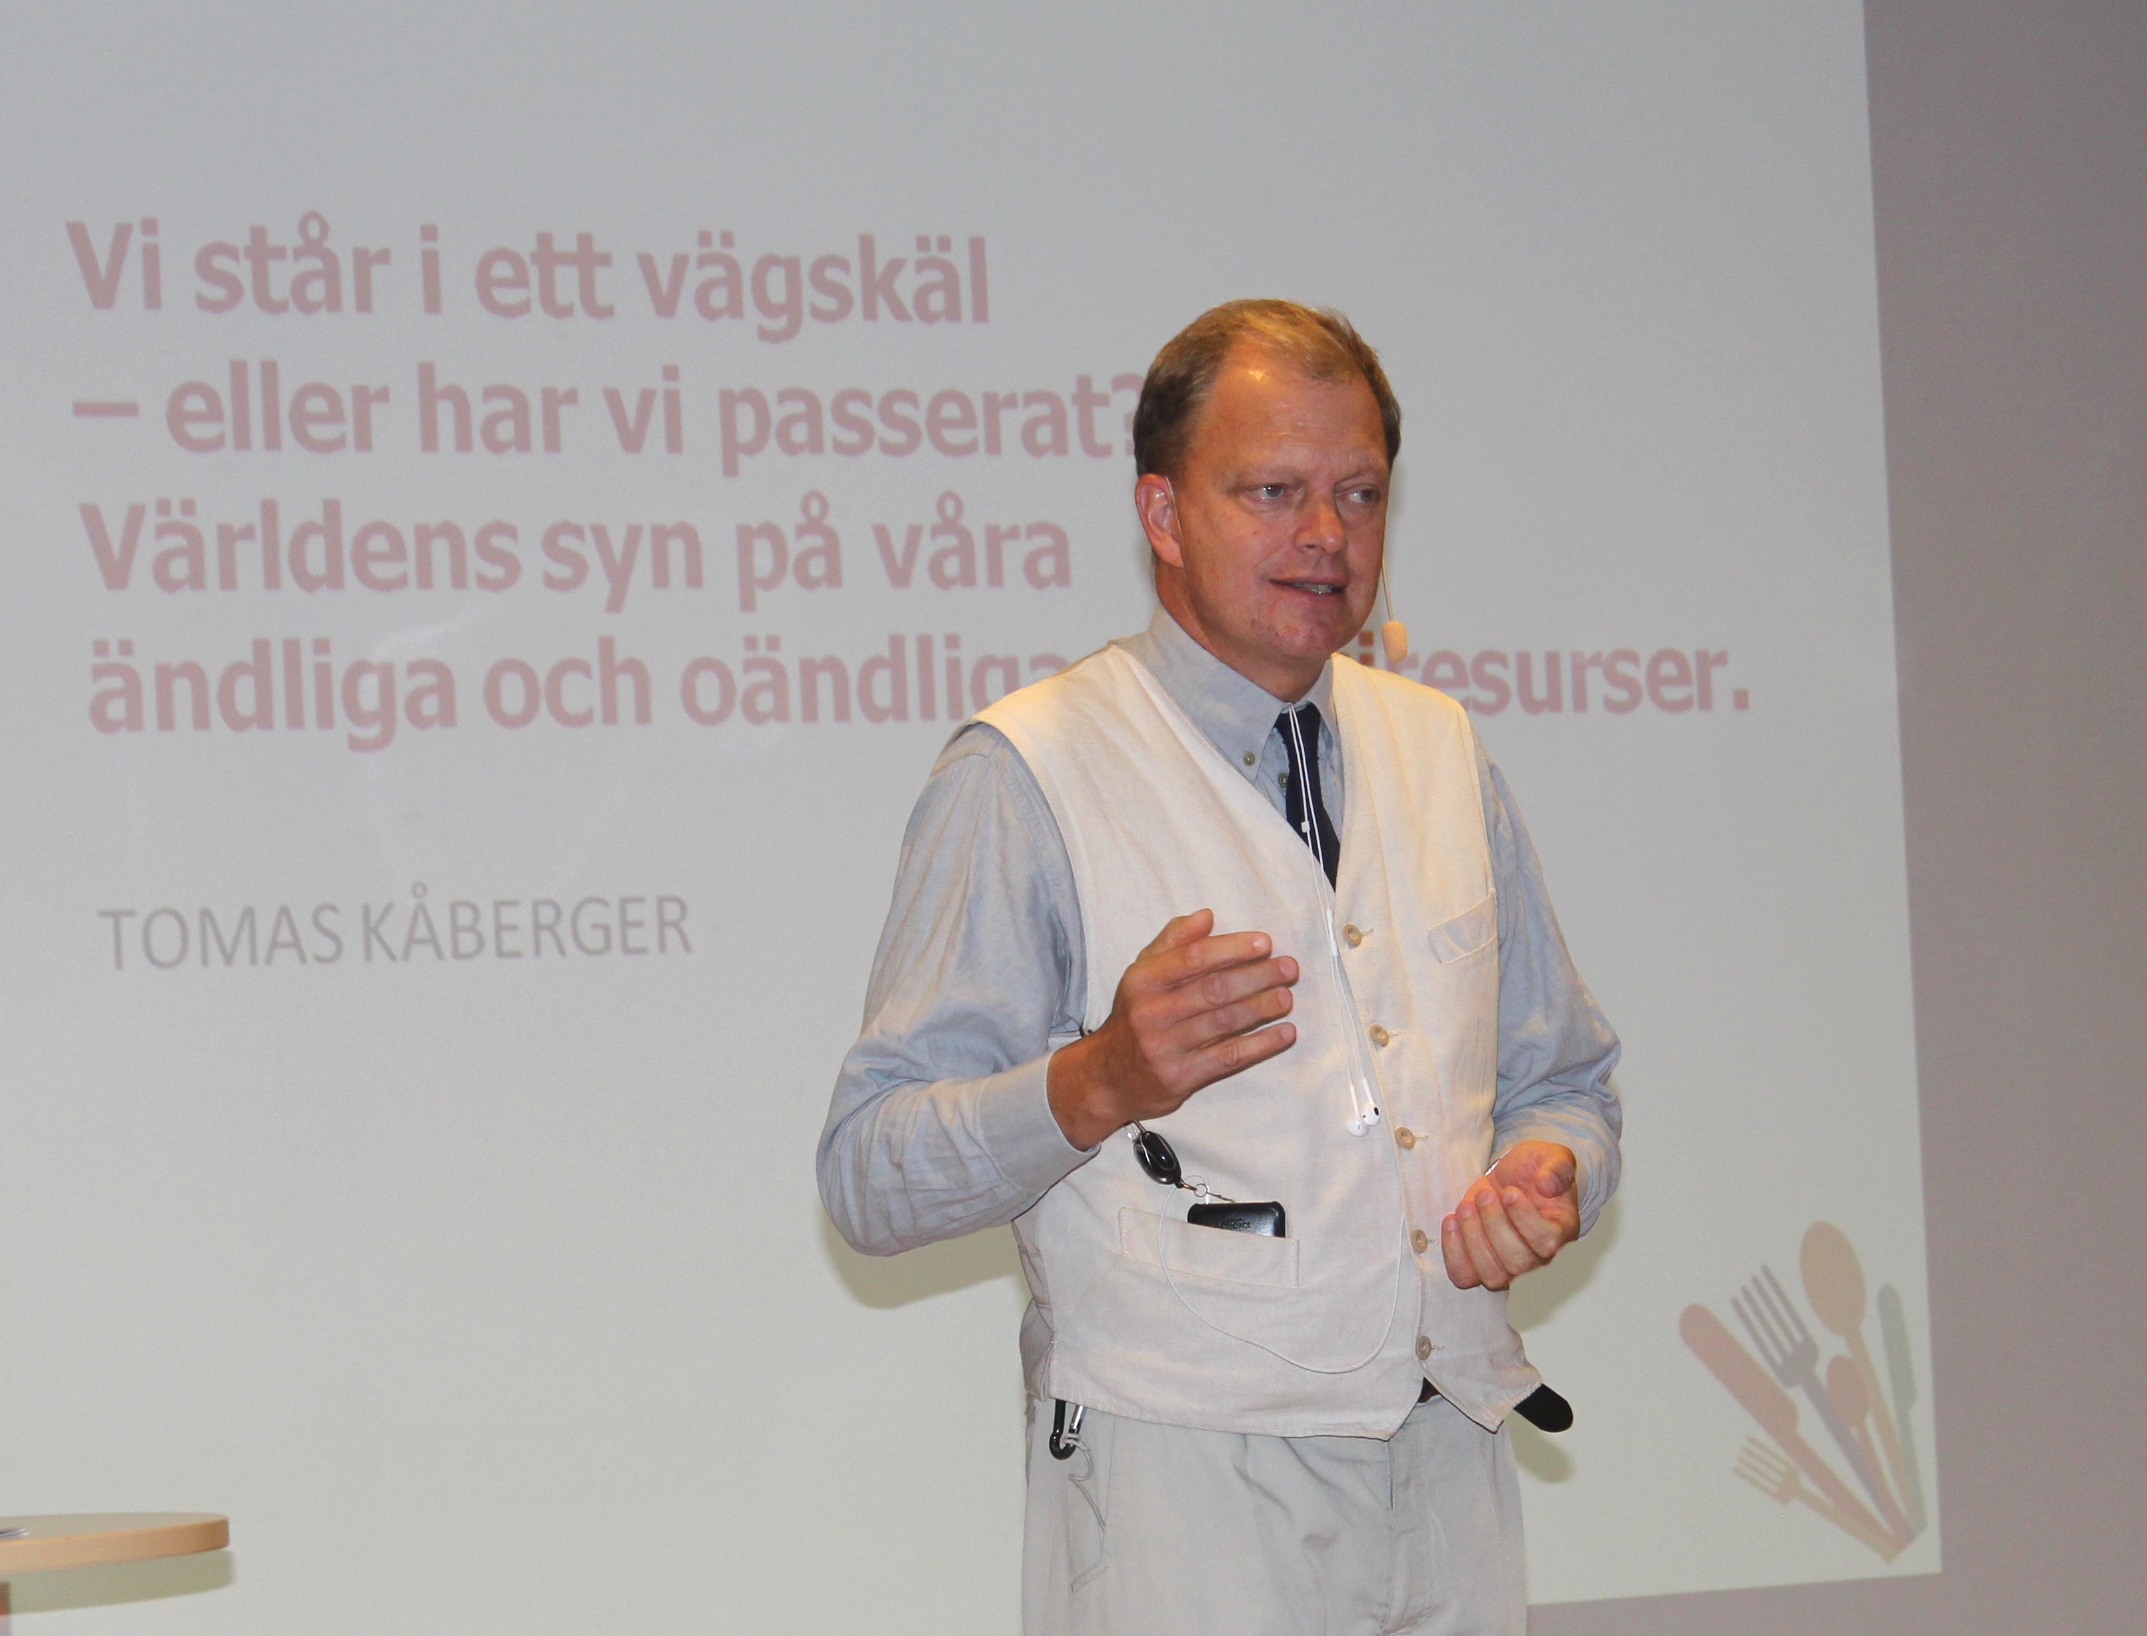 1.Tomas Kåberger